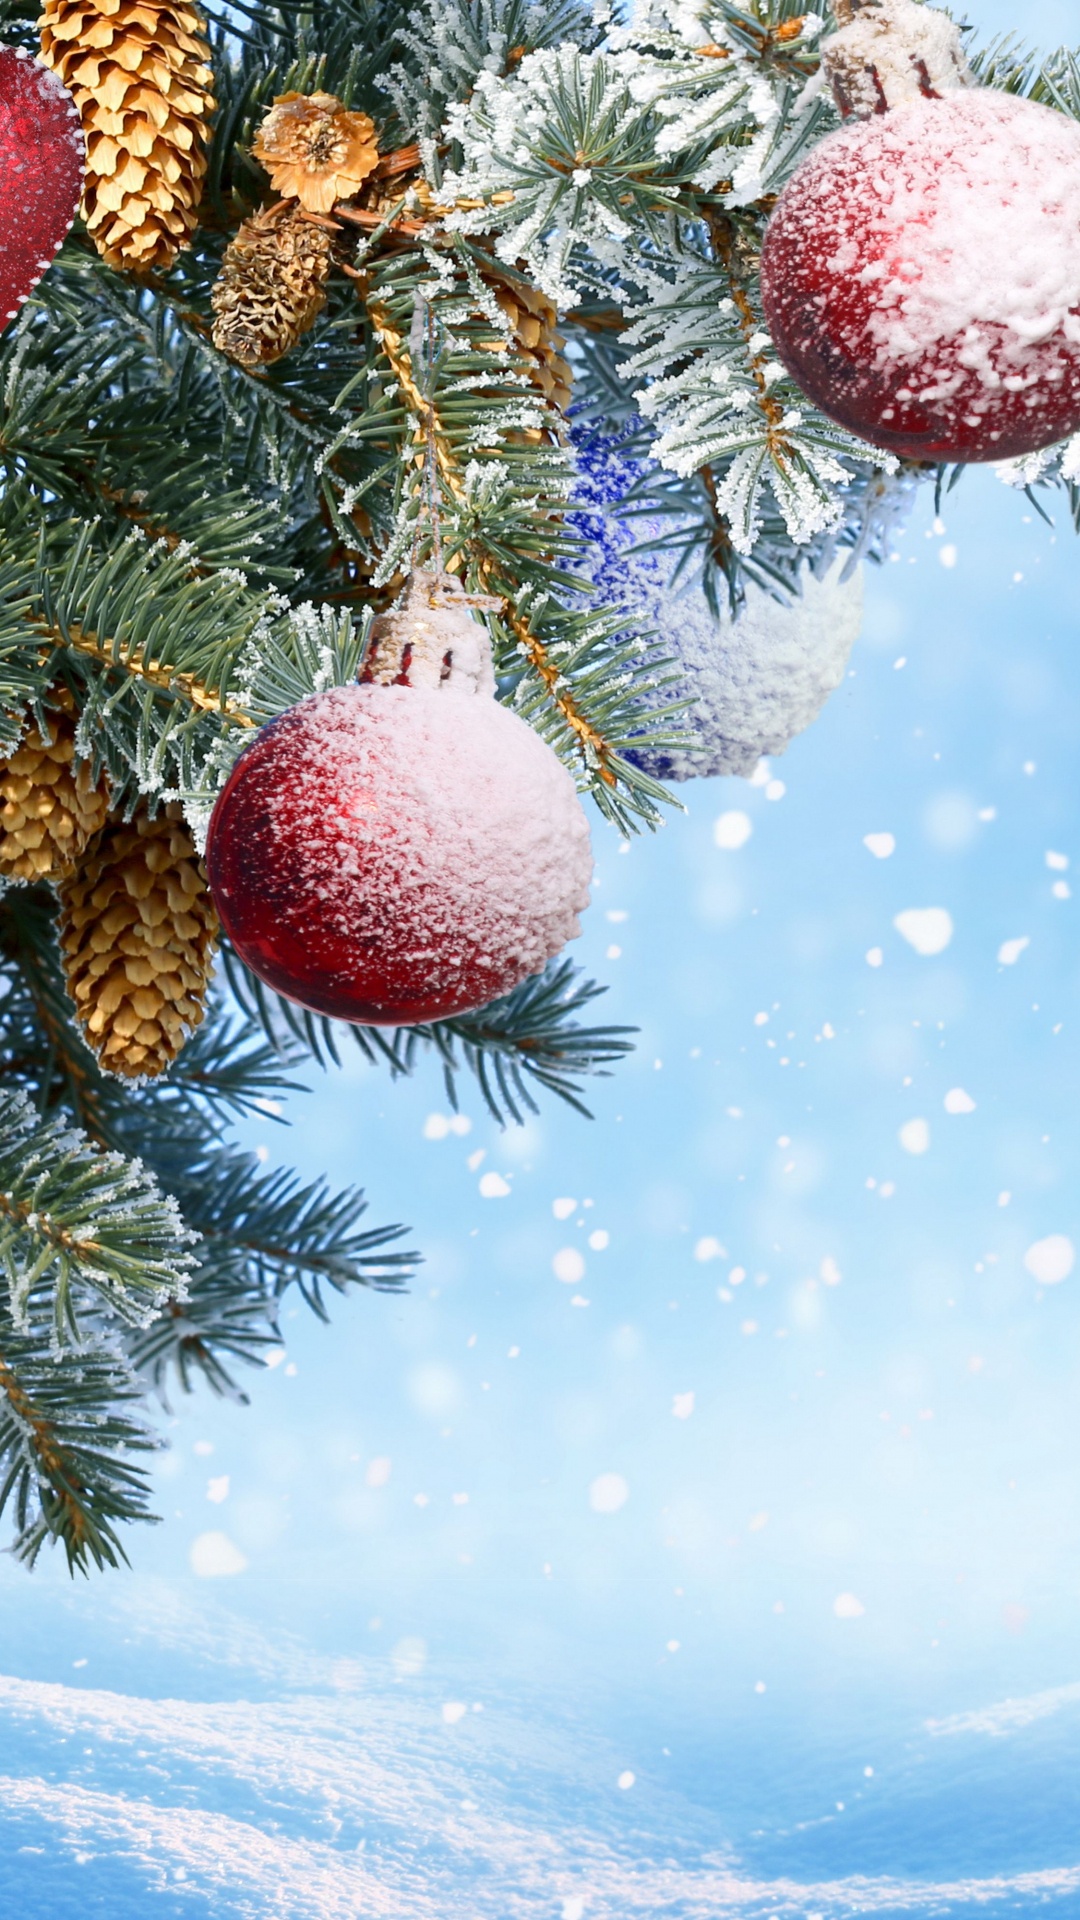 Neujahr, Weihnachten, Christmas Ornament, Baum, Fir. Wallpaper in 1080x1920 Resolution